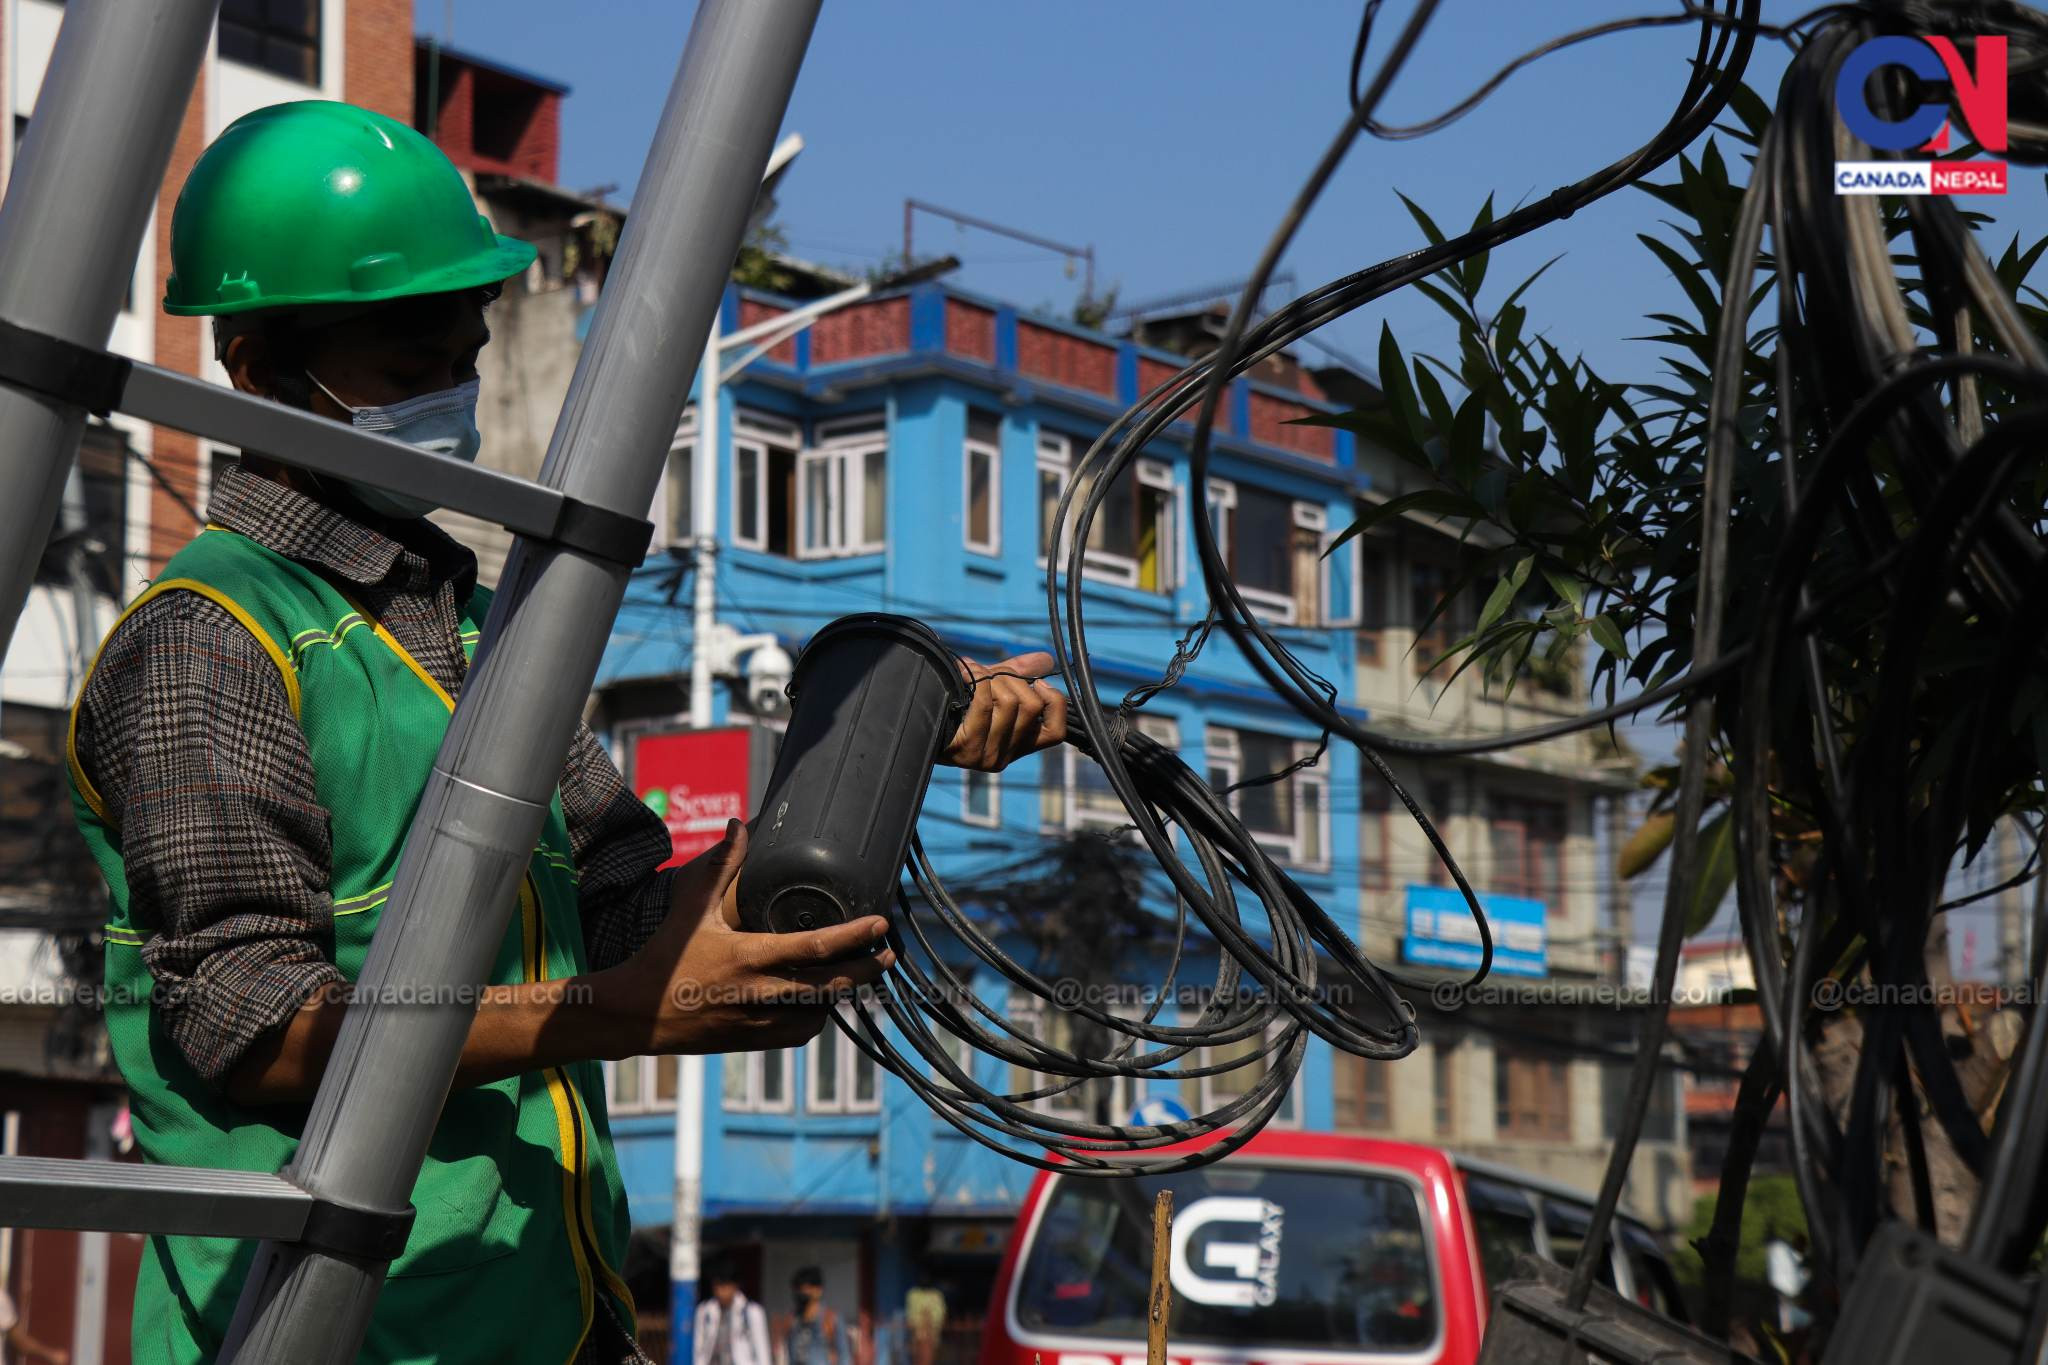 काठमाडौं महानगरले थाल्यो अव्यवस्थित तार व्यवस्थापन [तस्बिर कथा]